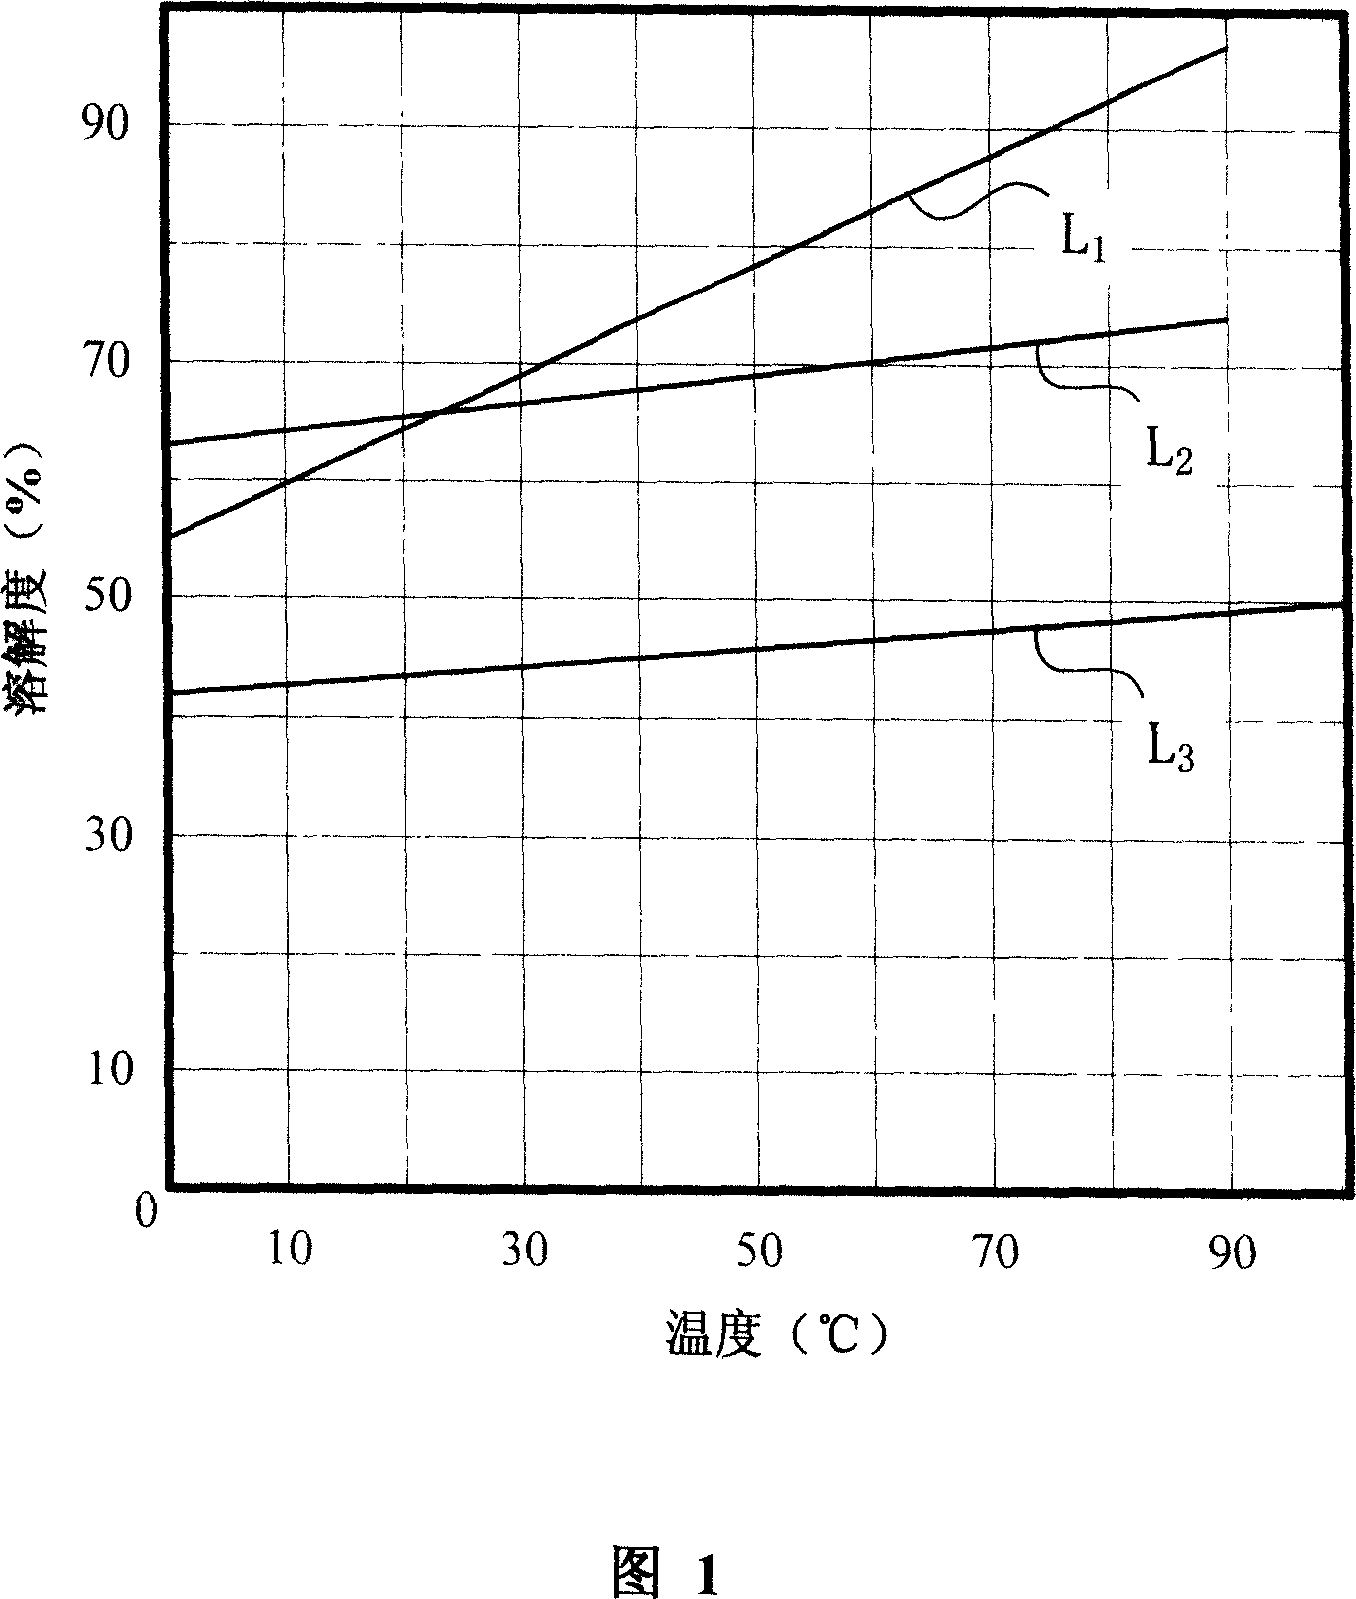 Method of separating multi-ammonium compound salt